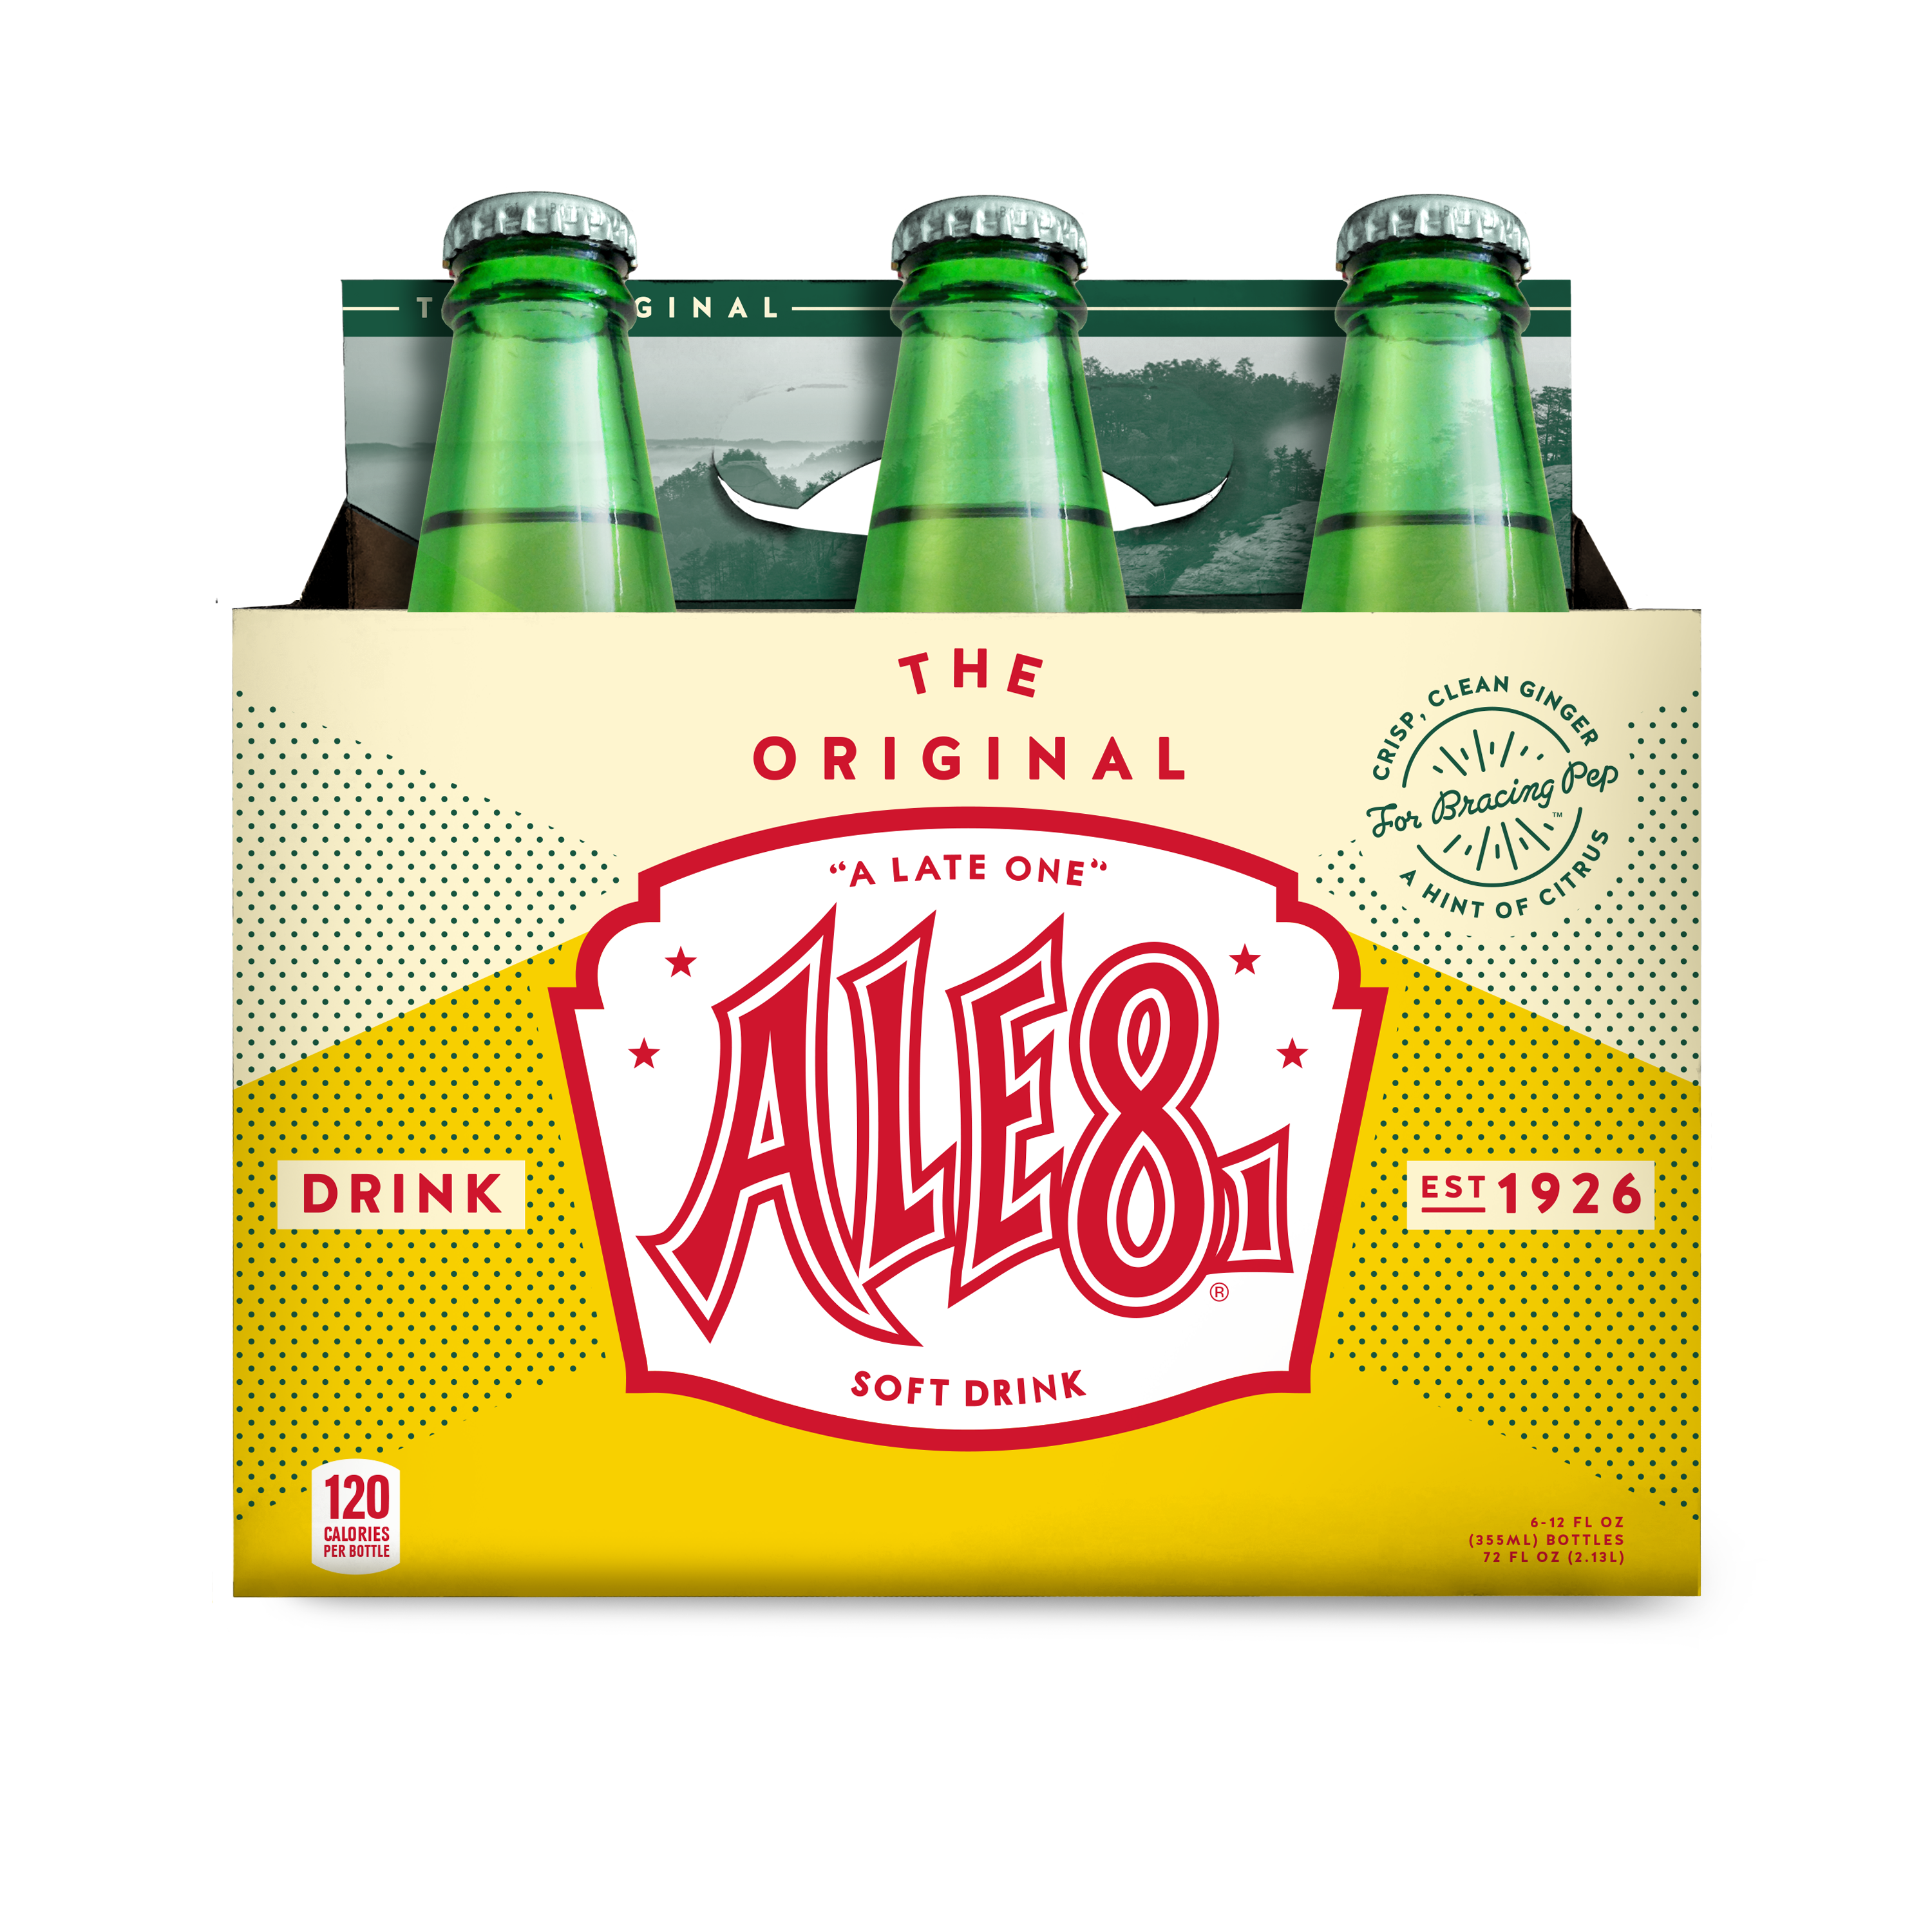 Ale-8-One Original Ginger Ale Soda Pop, 12 Fl Oz, 6 Pack Bottles - image 1 of 2